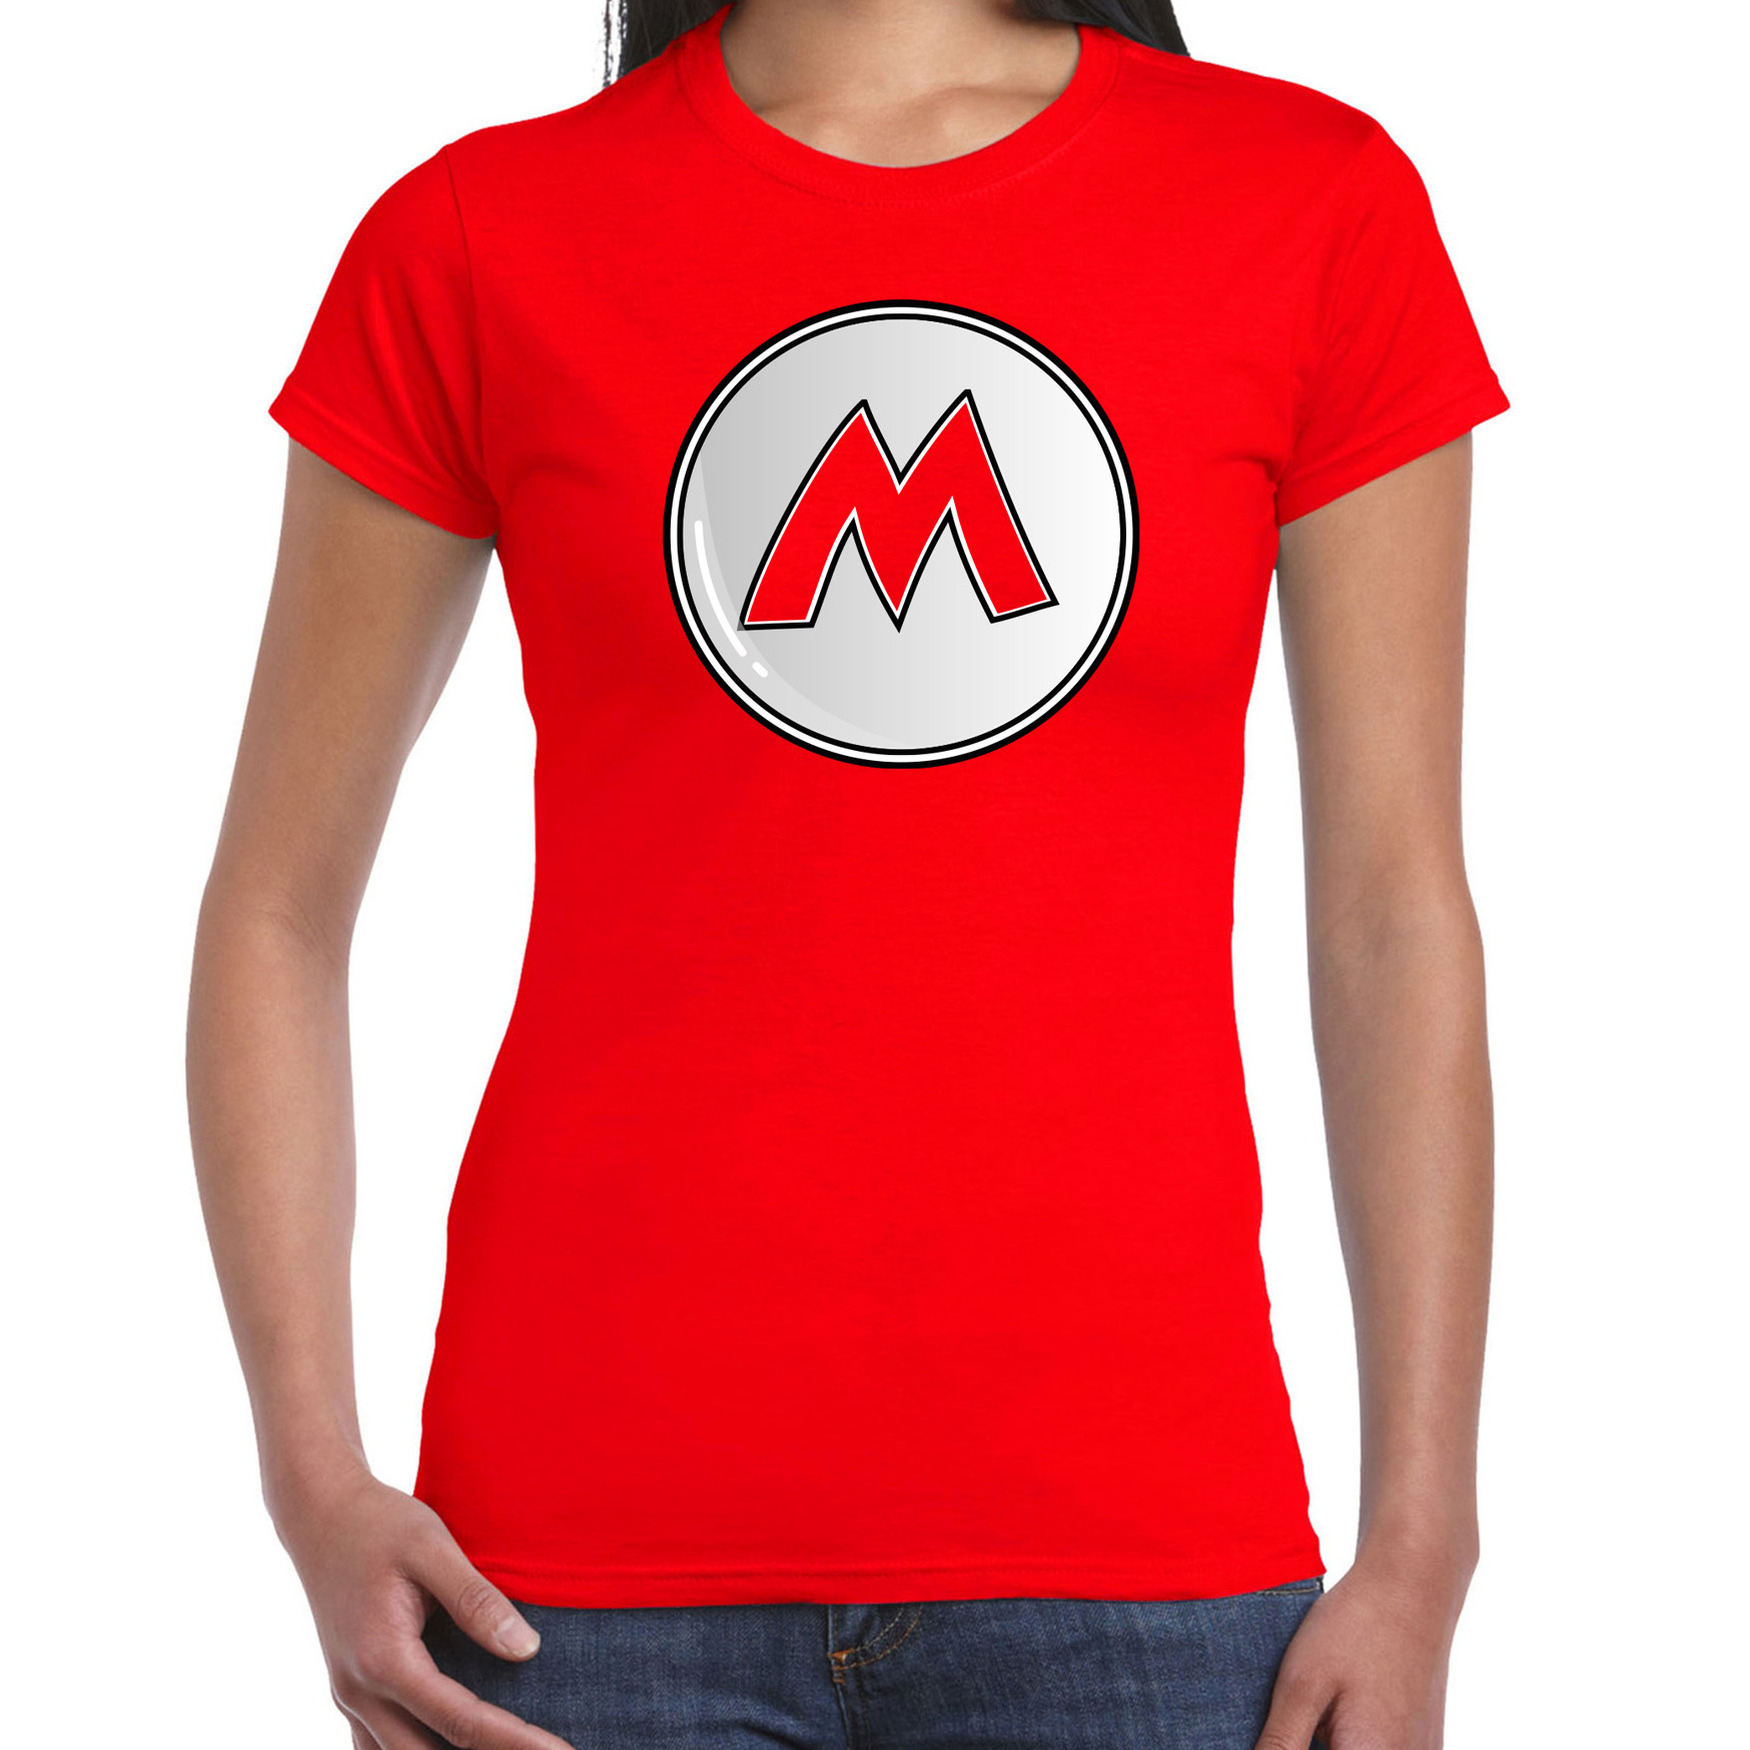 Afbeelding van Game verkleed t-shirt voor dames - loodgieter Mario - rood - carnaval/themafeest kostuum